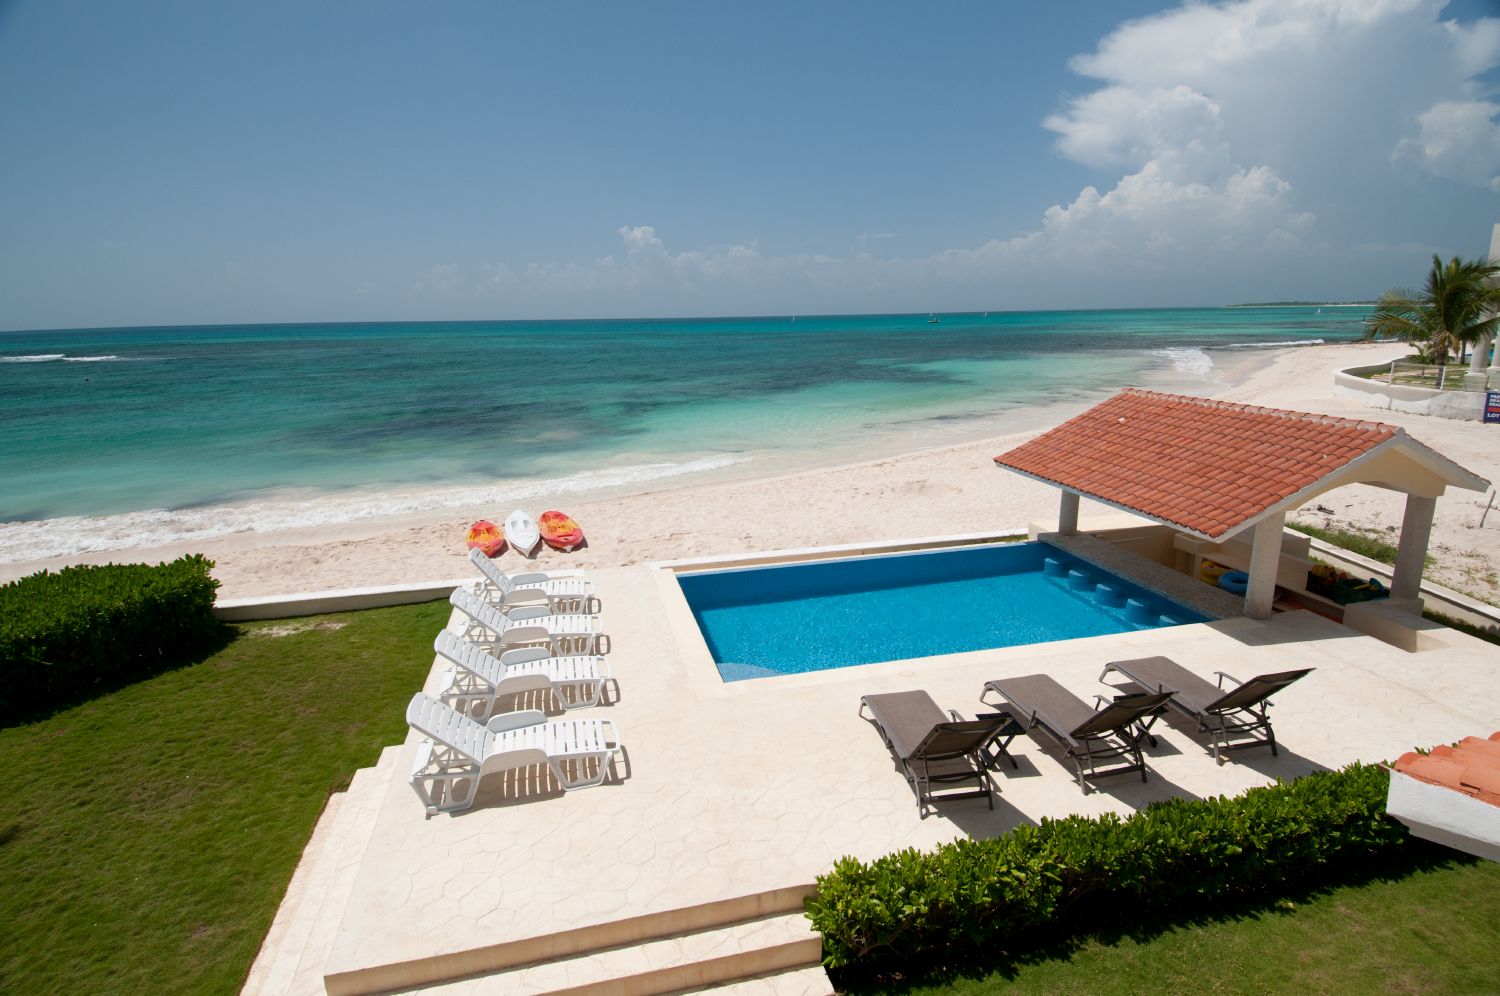 Villa vacacional en alquiler en México - Quintana Roo - Riviera Maya - Villa 454 - 20